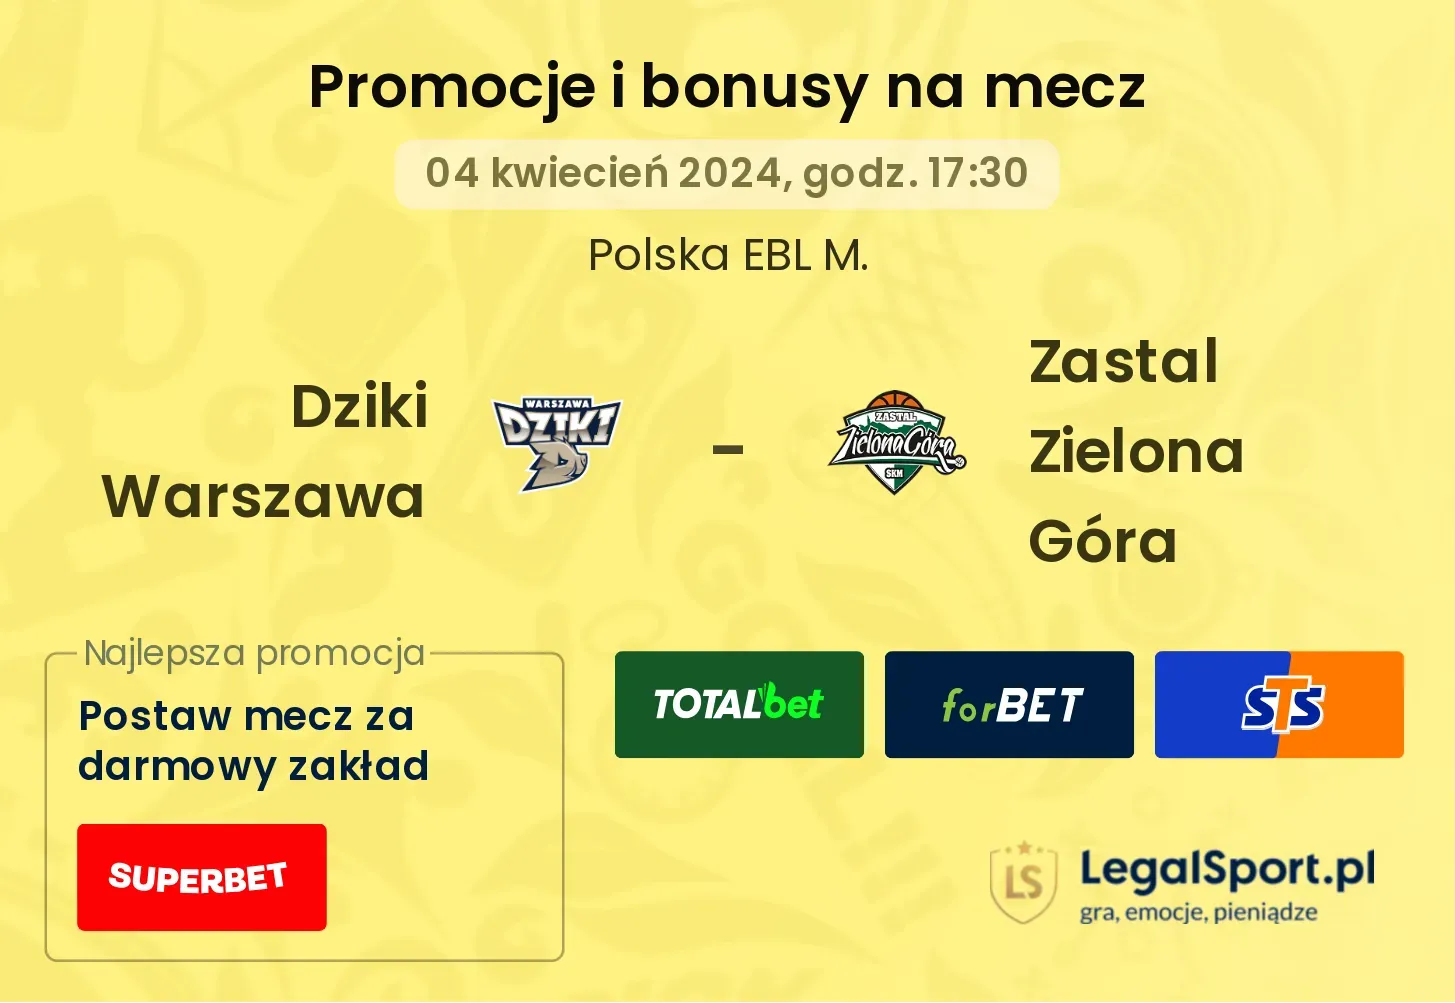 Dziki Warszawa - Zastal Zielona Góra promocje bonusy na mecz